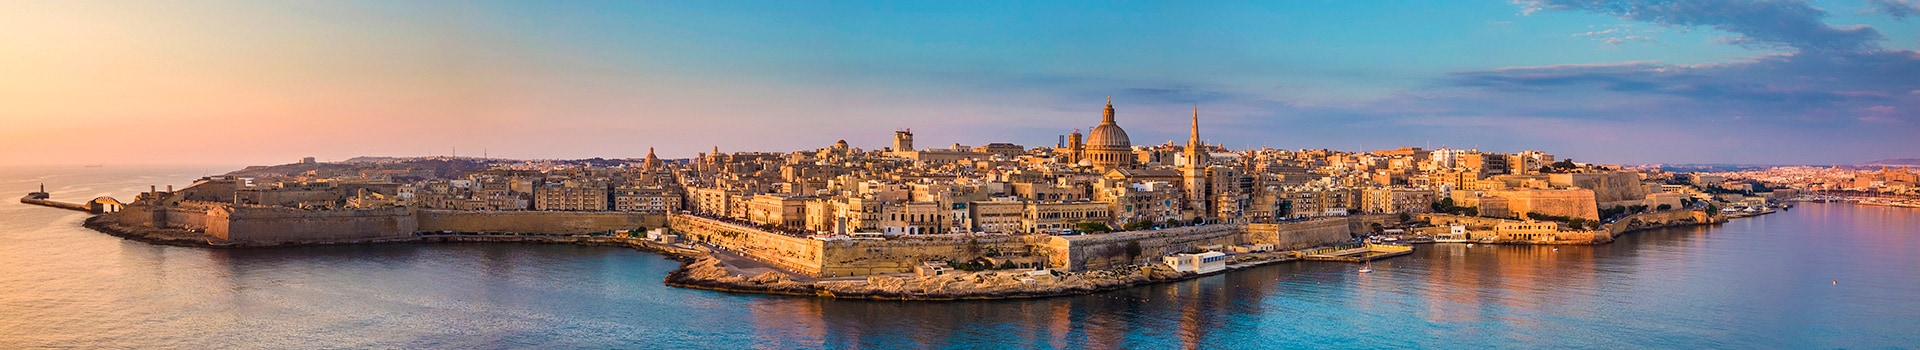 Pescara - Malta